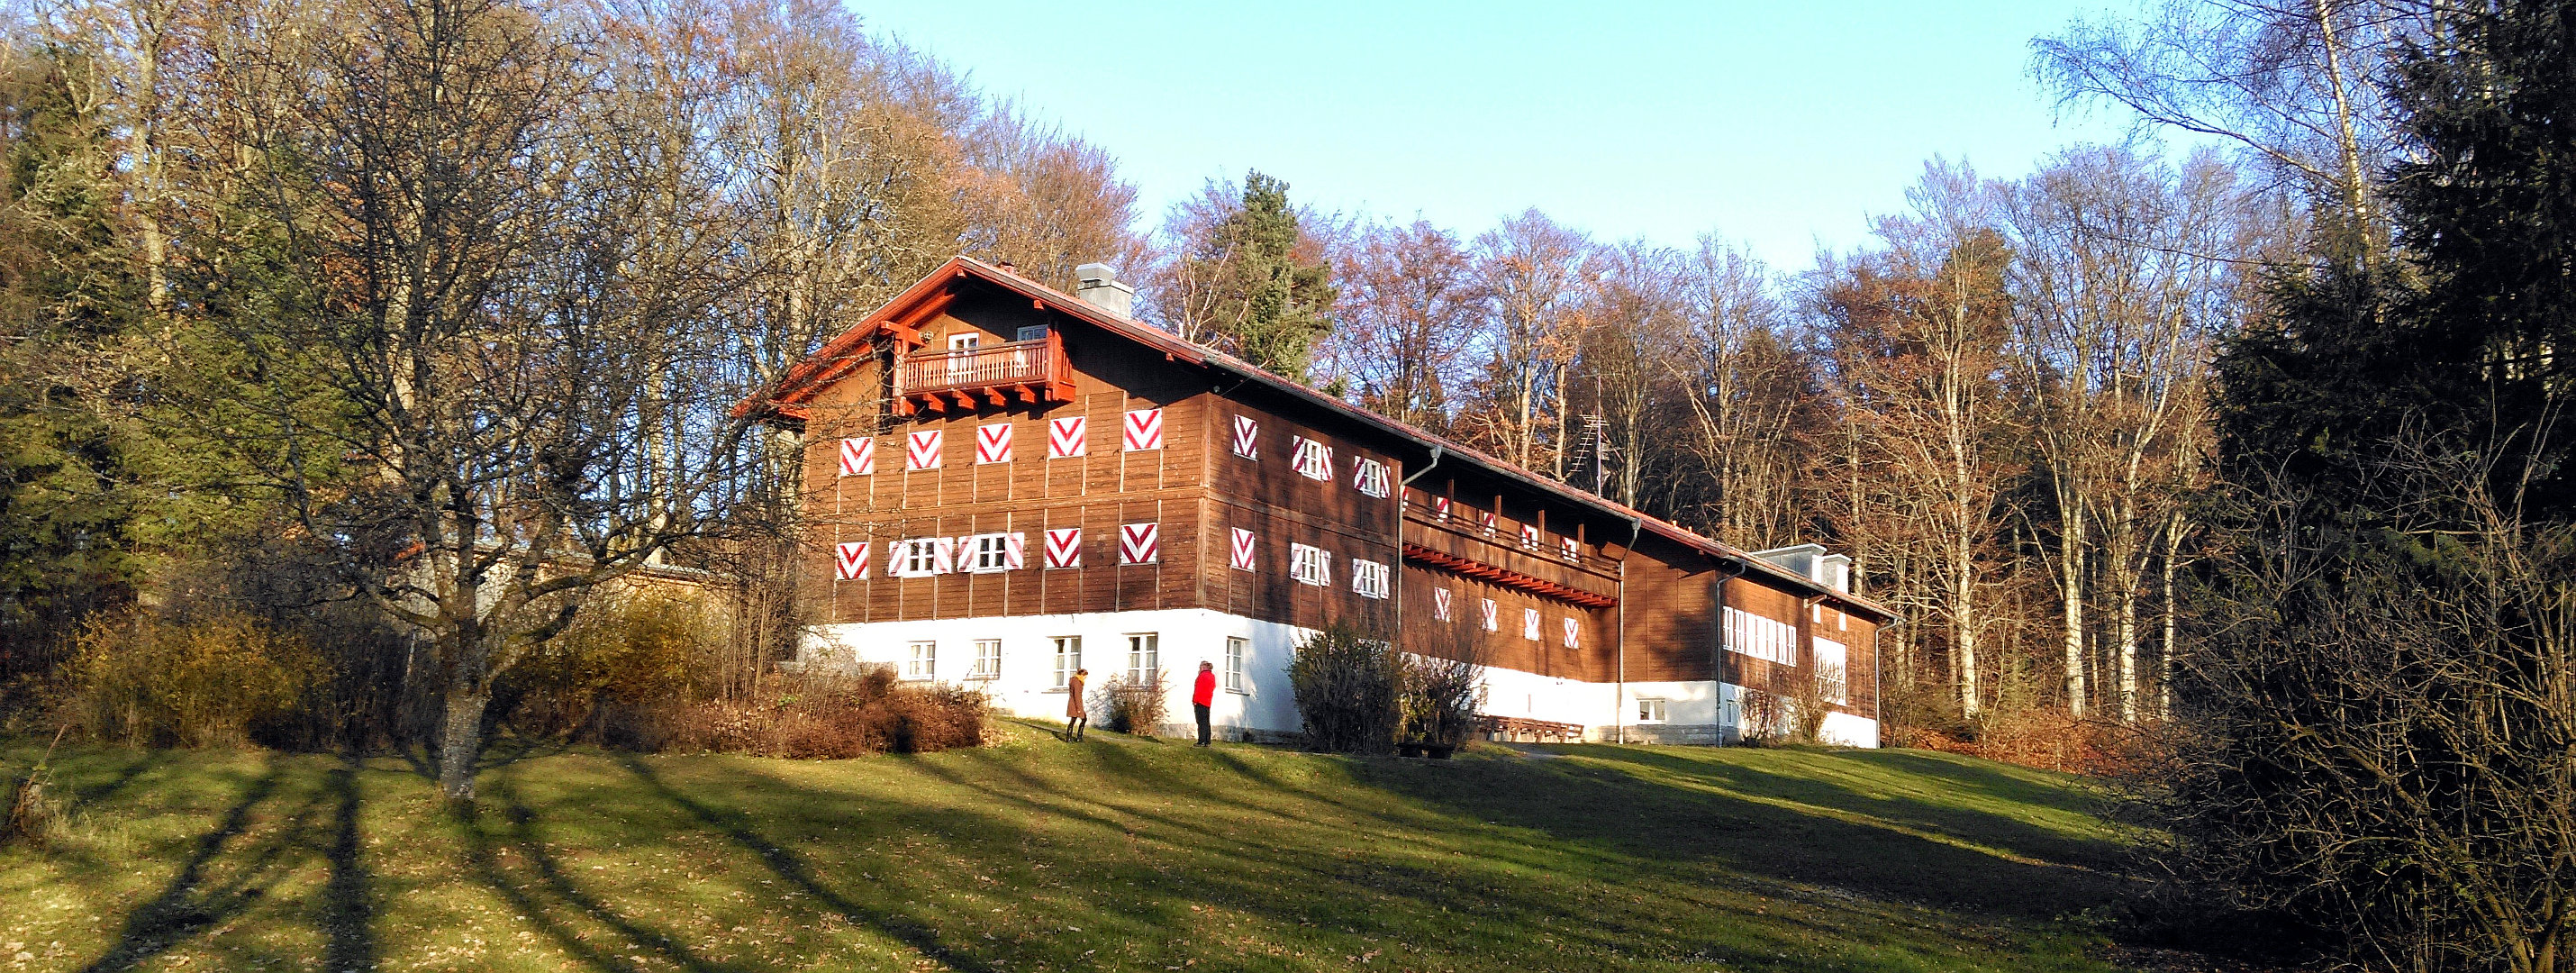 Bild vom Vereins- und Retreatzentrum Tharpaling im Bayerischen Wald